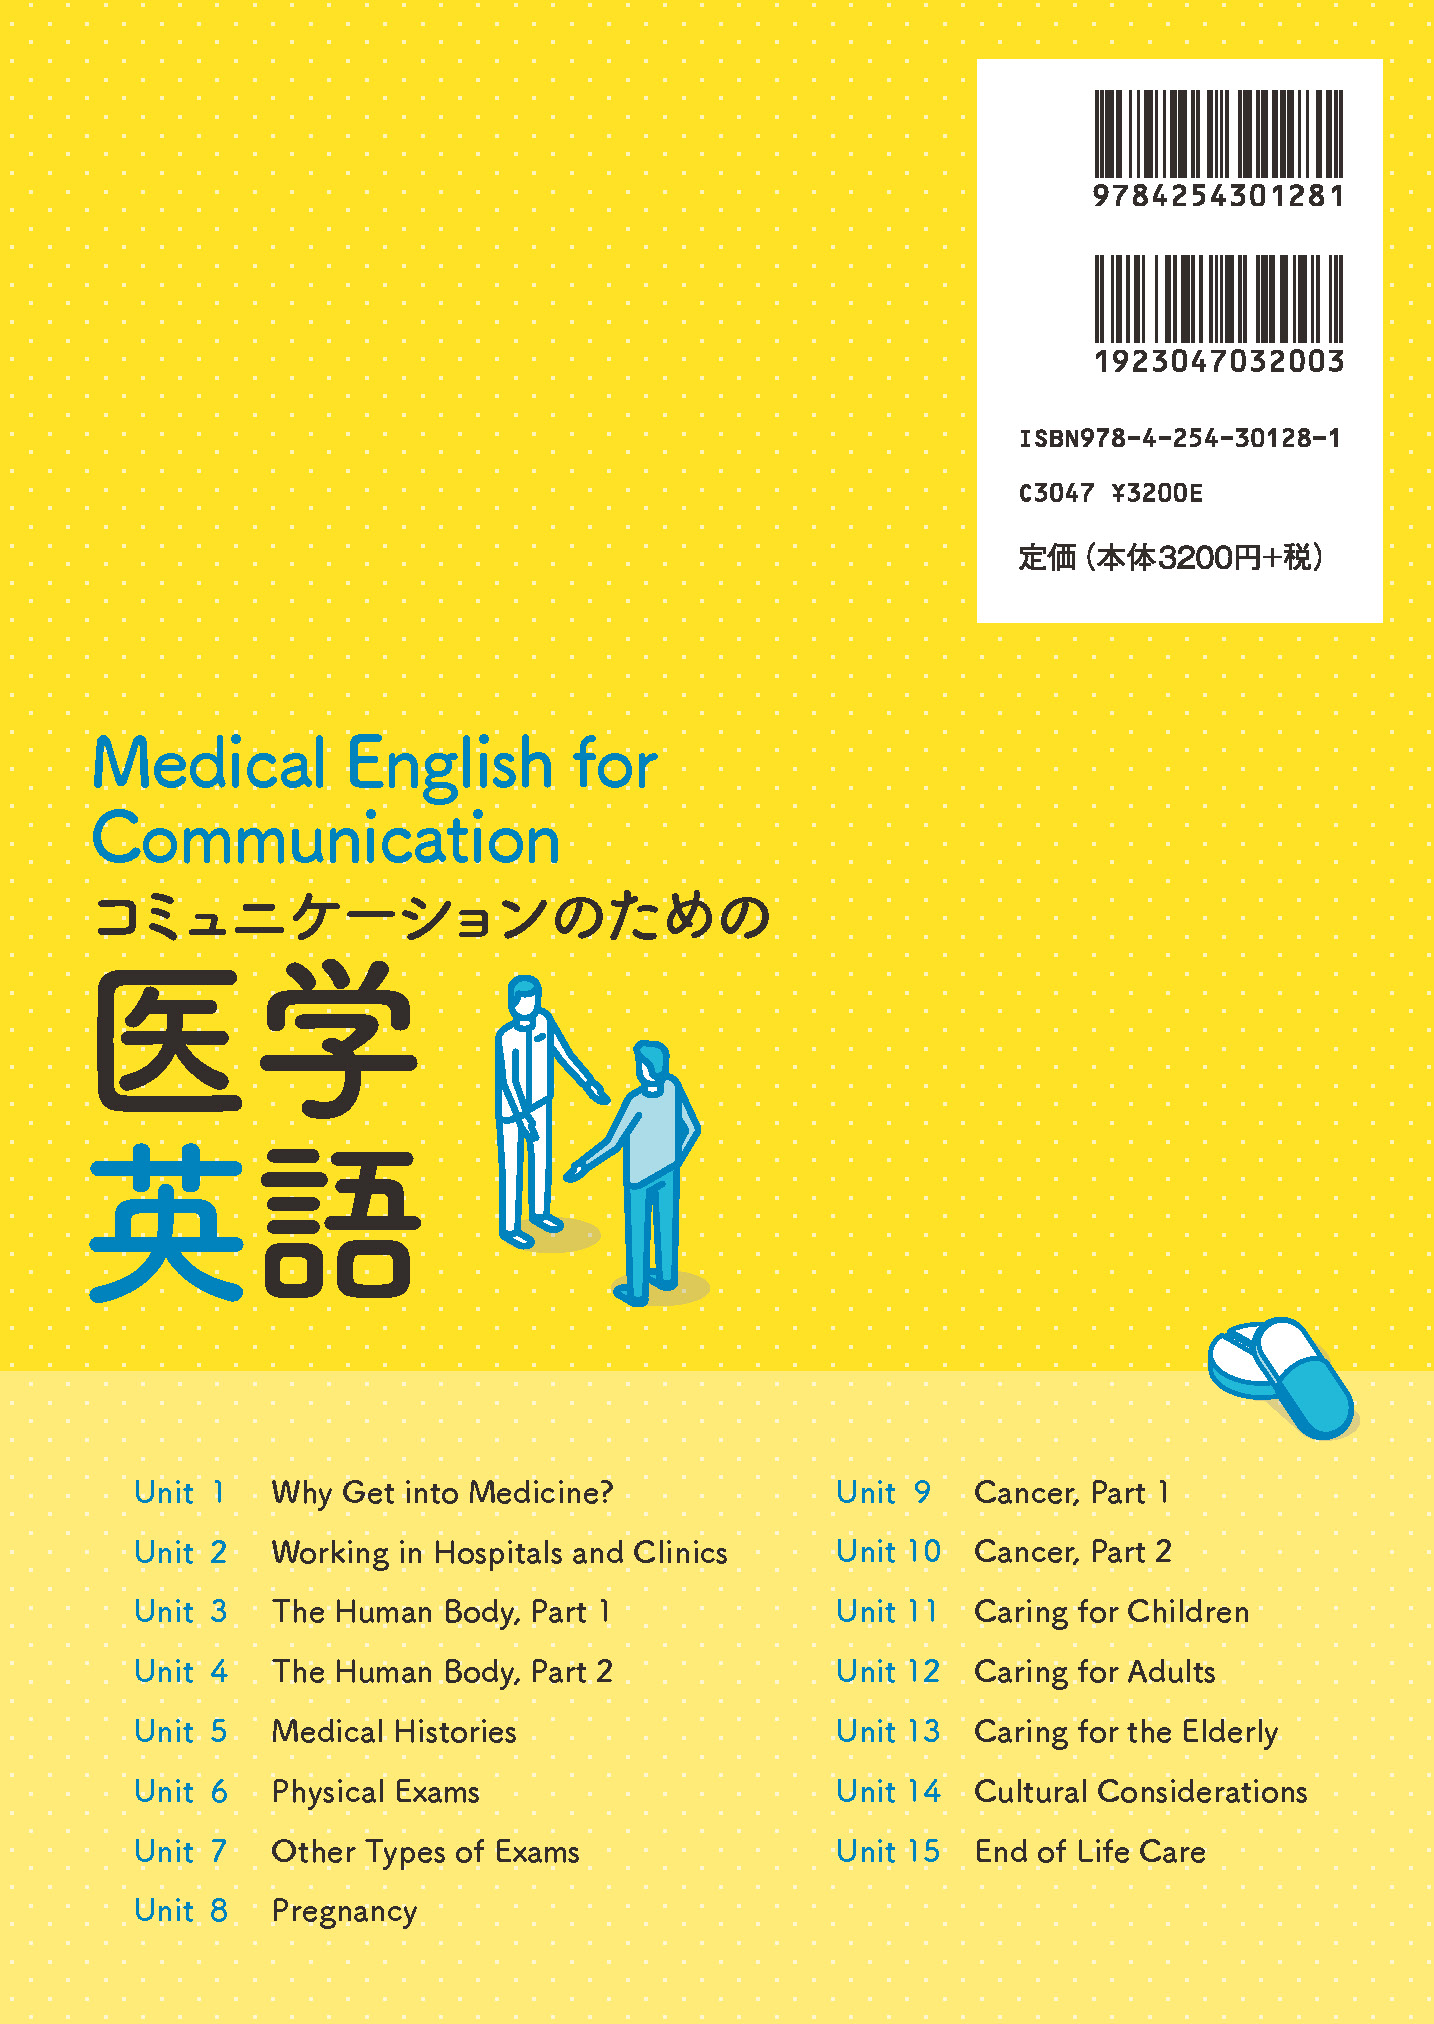 写真 : コミュニケーションのための医学英語 Medical English for Communication 